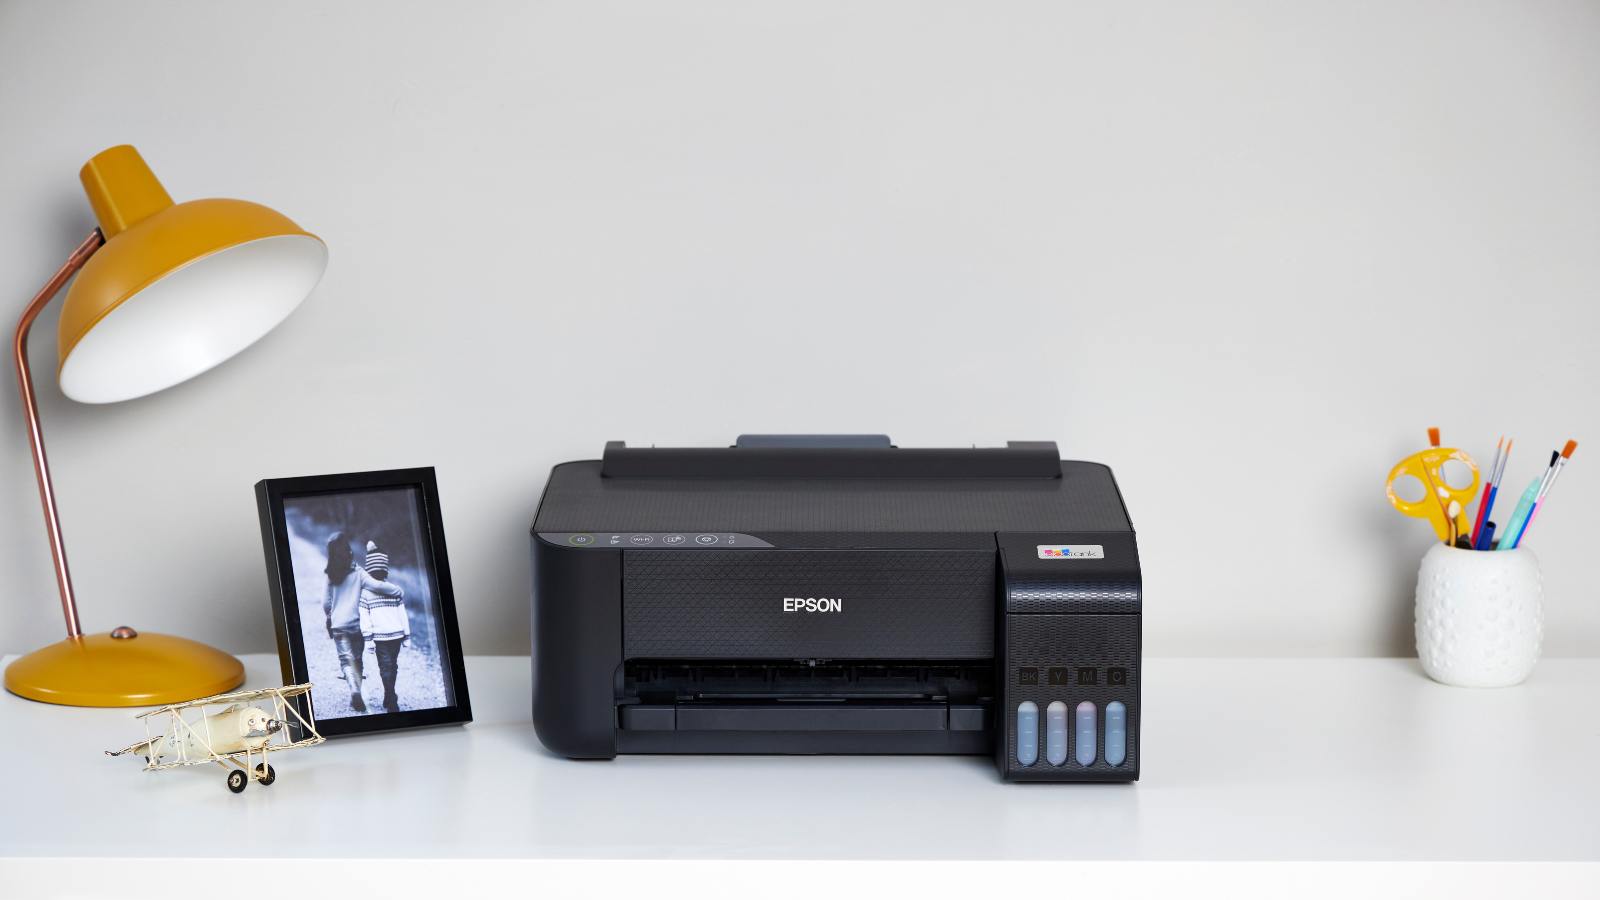 Je bekijkt nu Epson printer installeren op een laptop